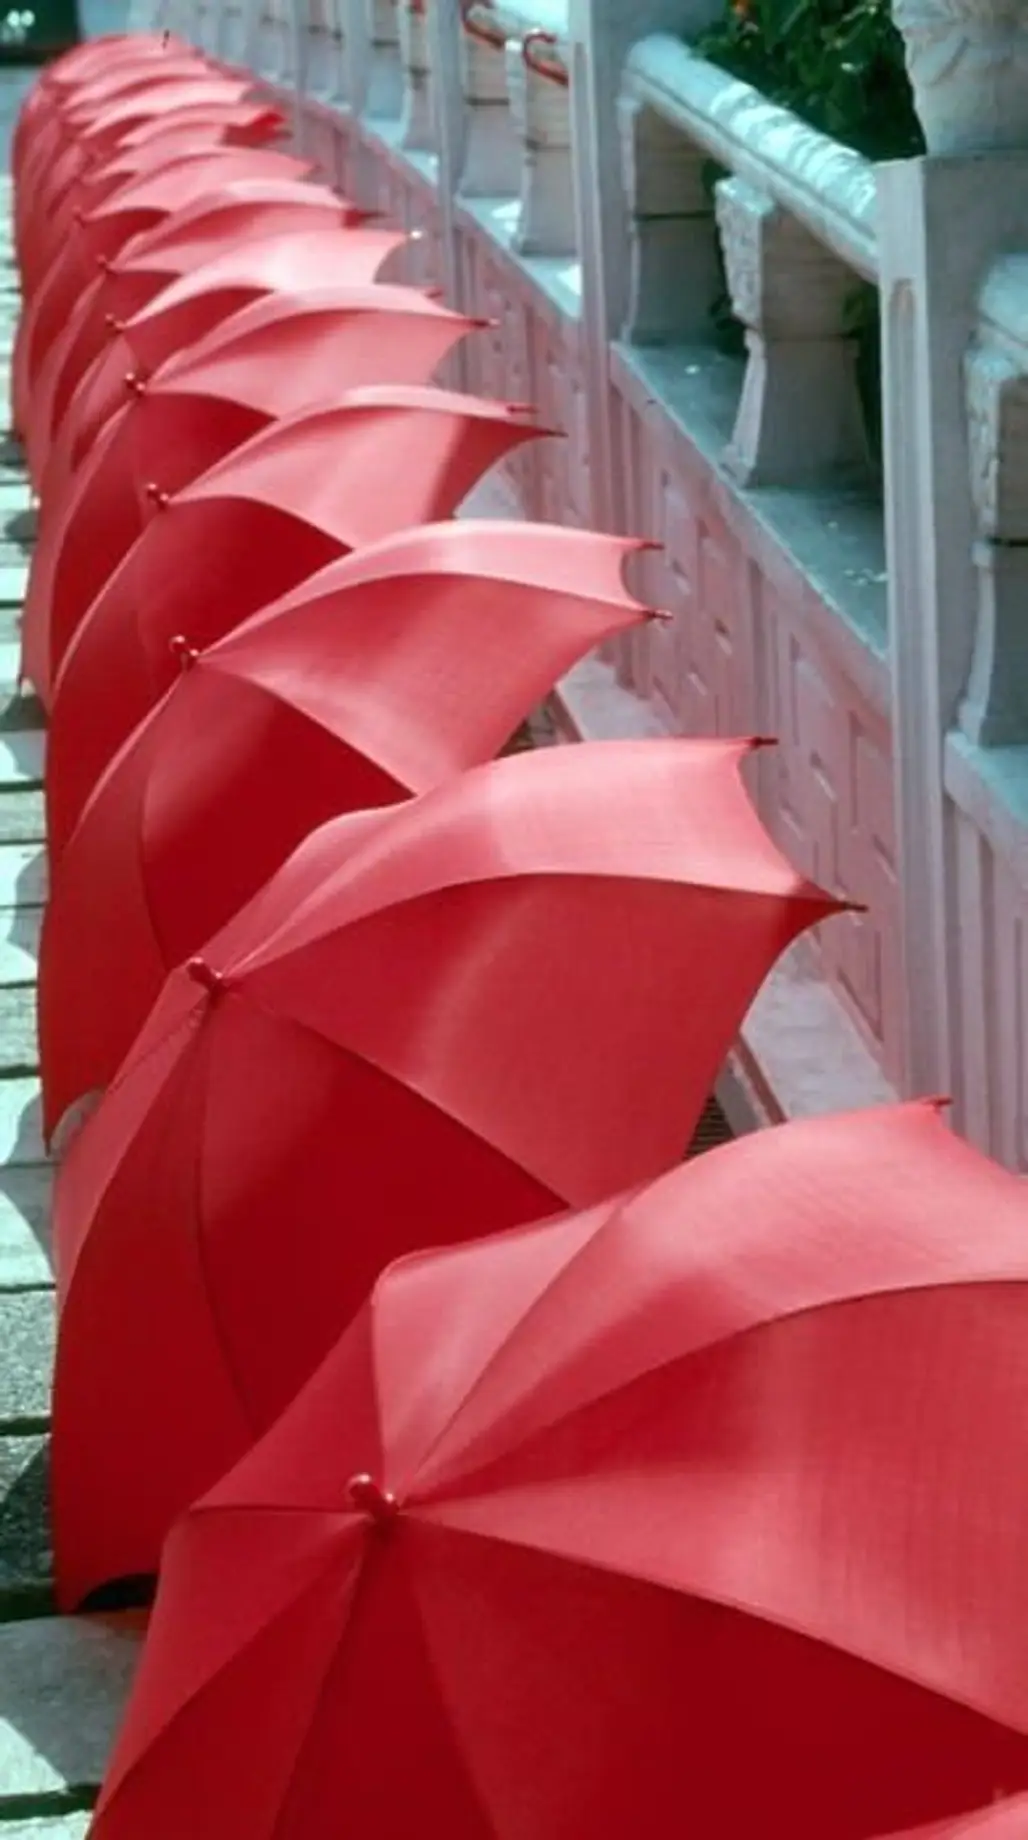 Red Umbrellas